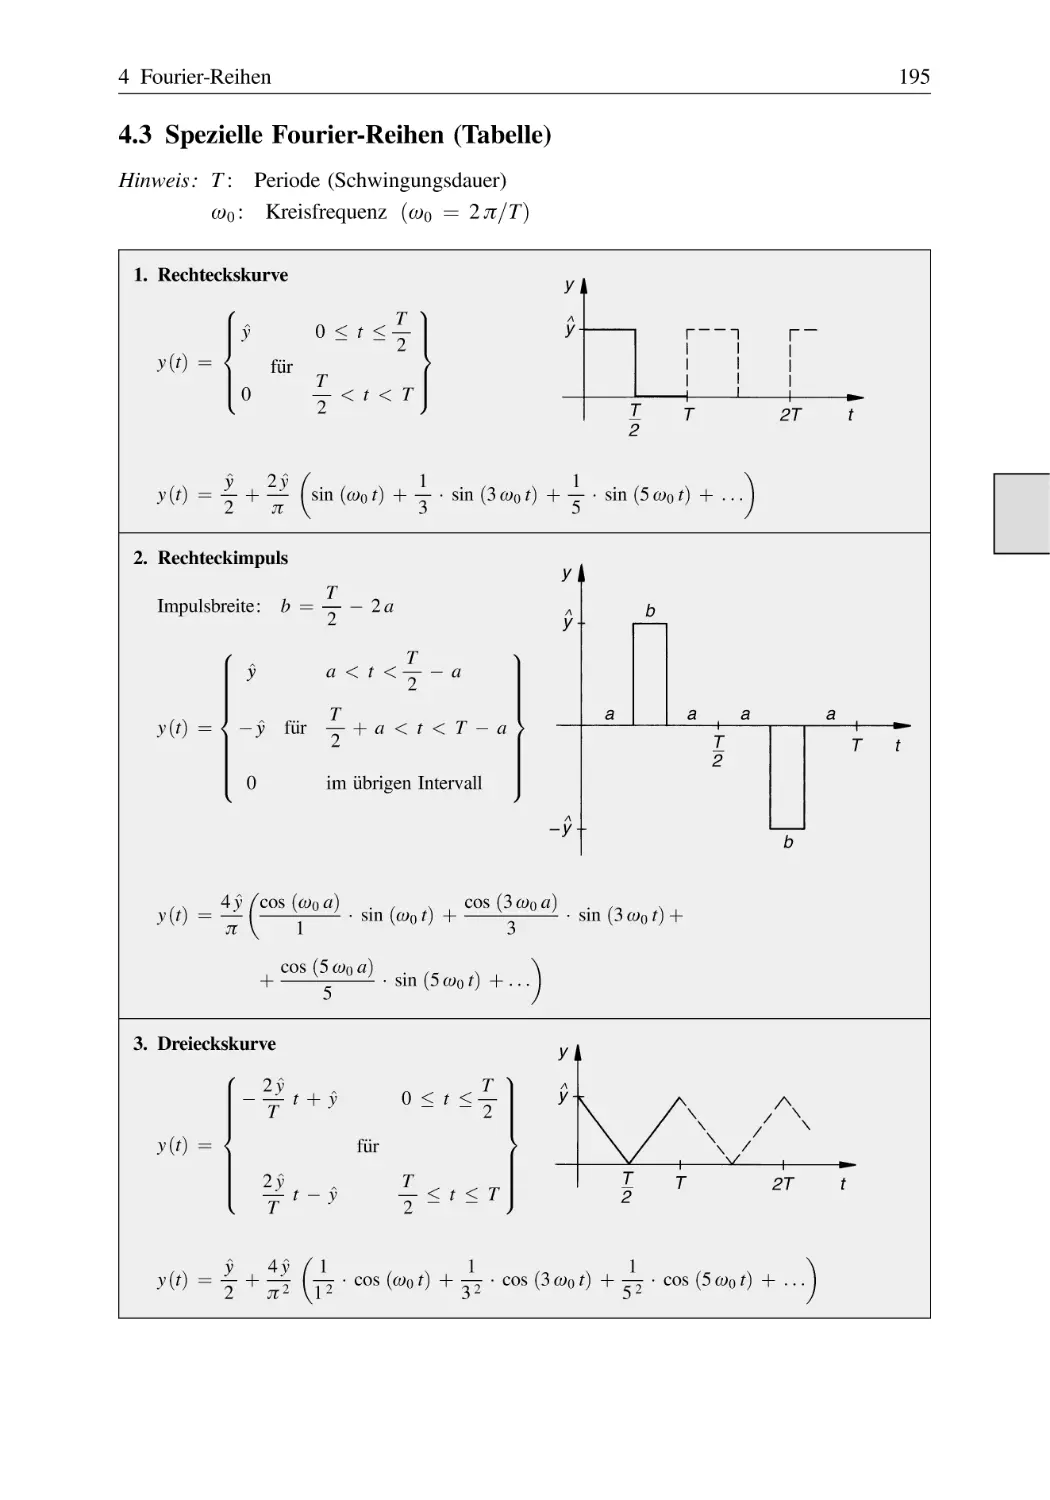 4.3 Spezielle Fourier-Reihen (Tabelle)